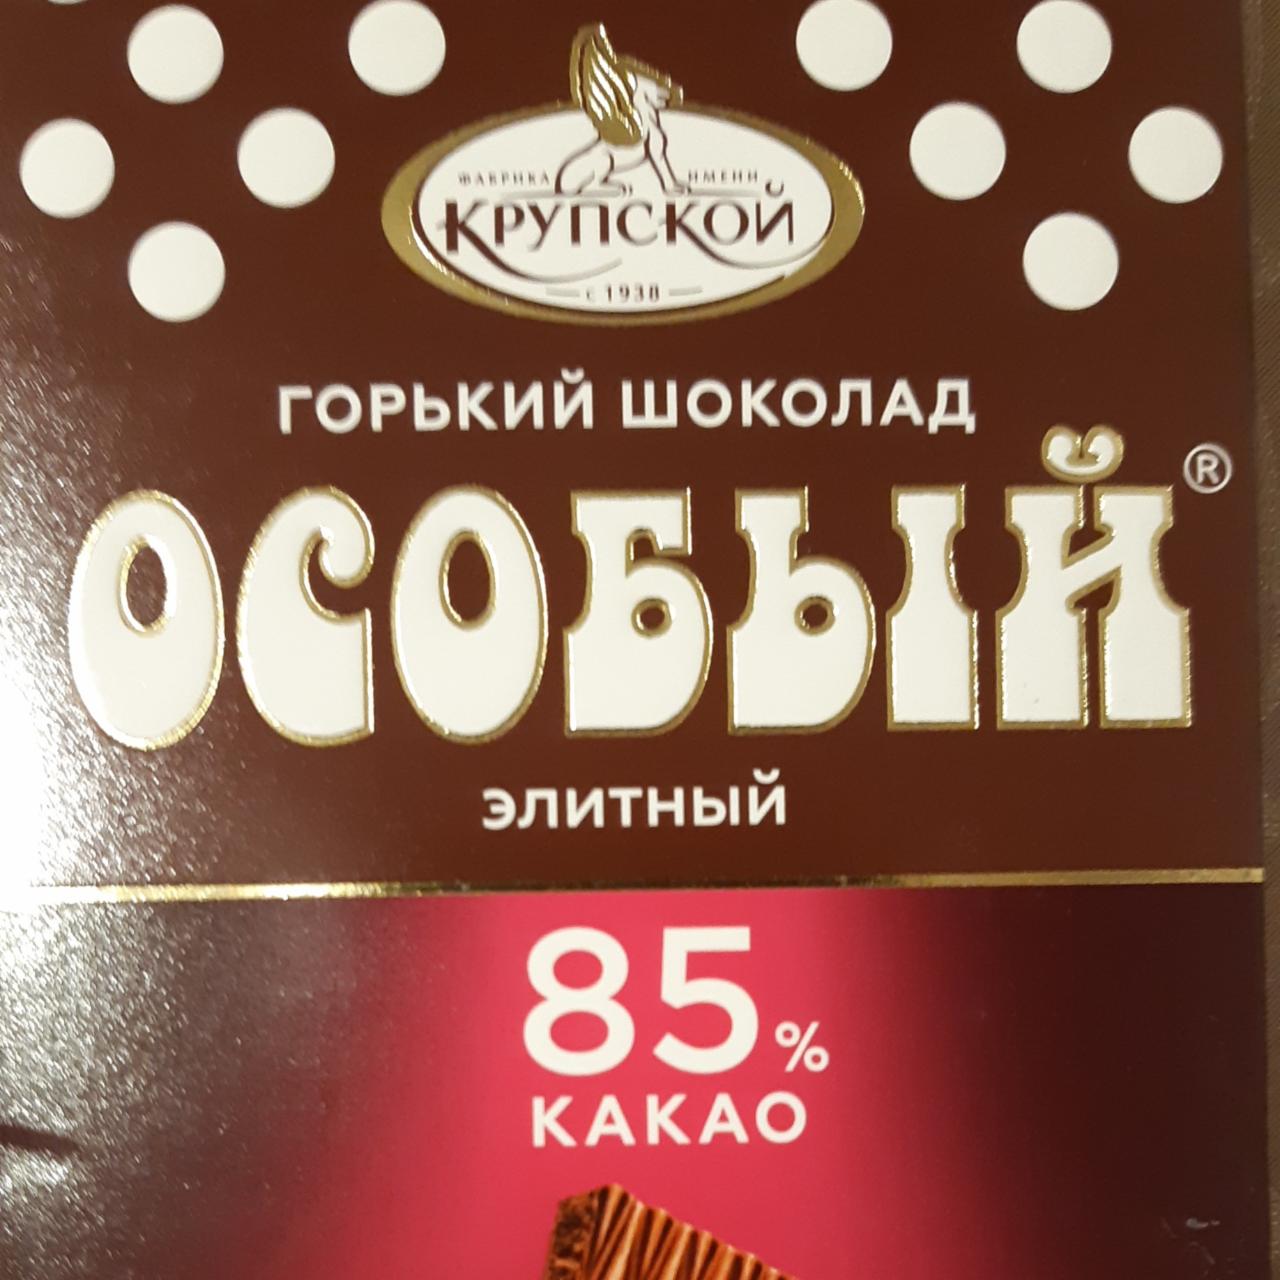 Фото - Горький шоколад особый элитный КФ им. Крупской Н.К.